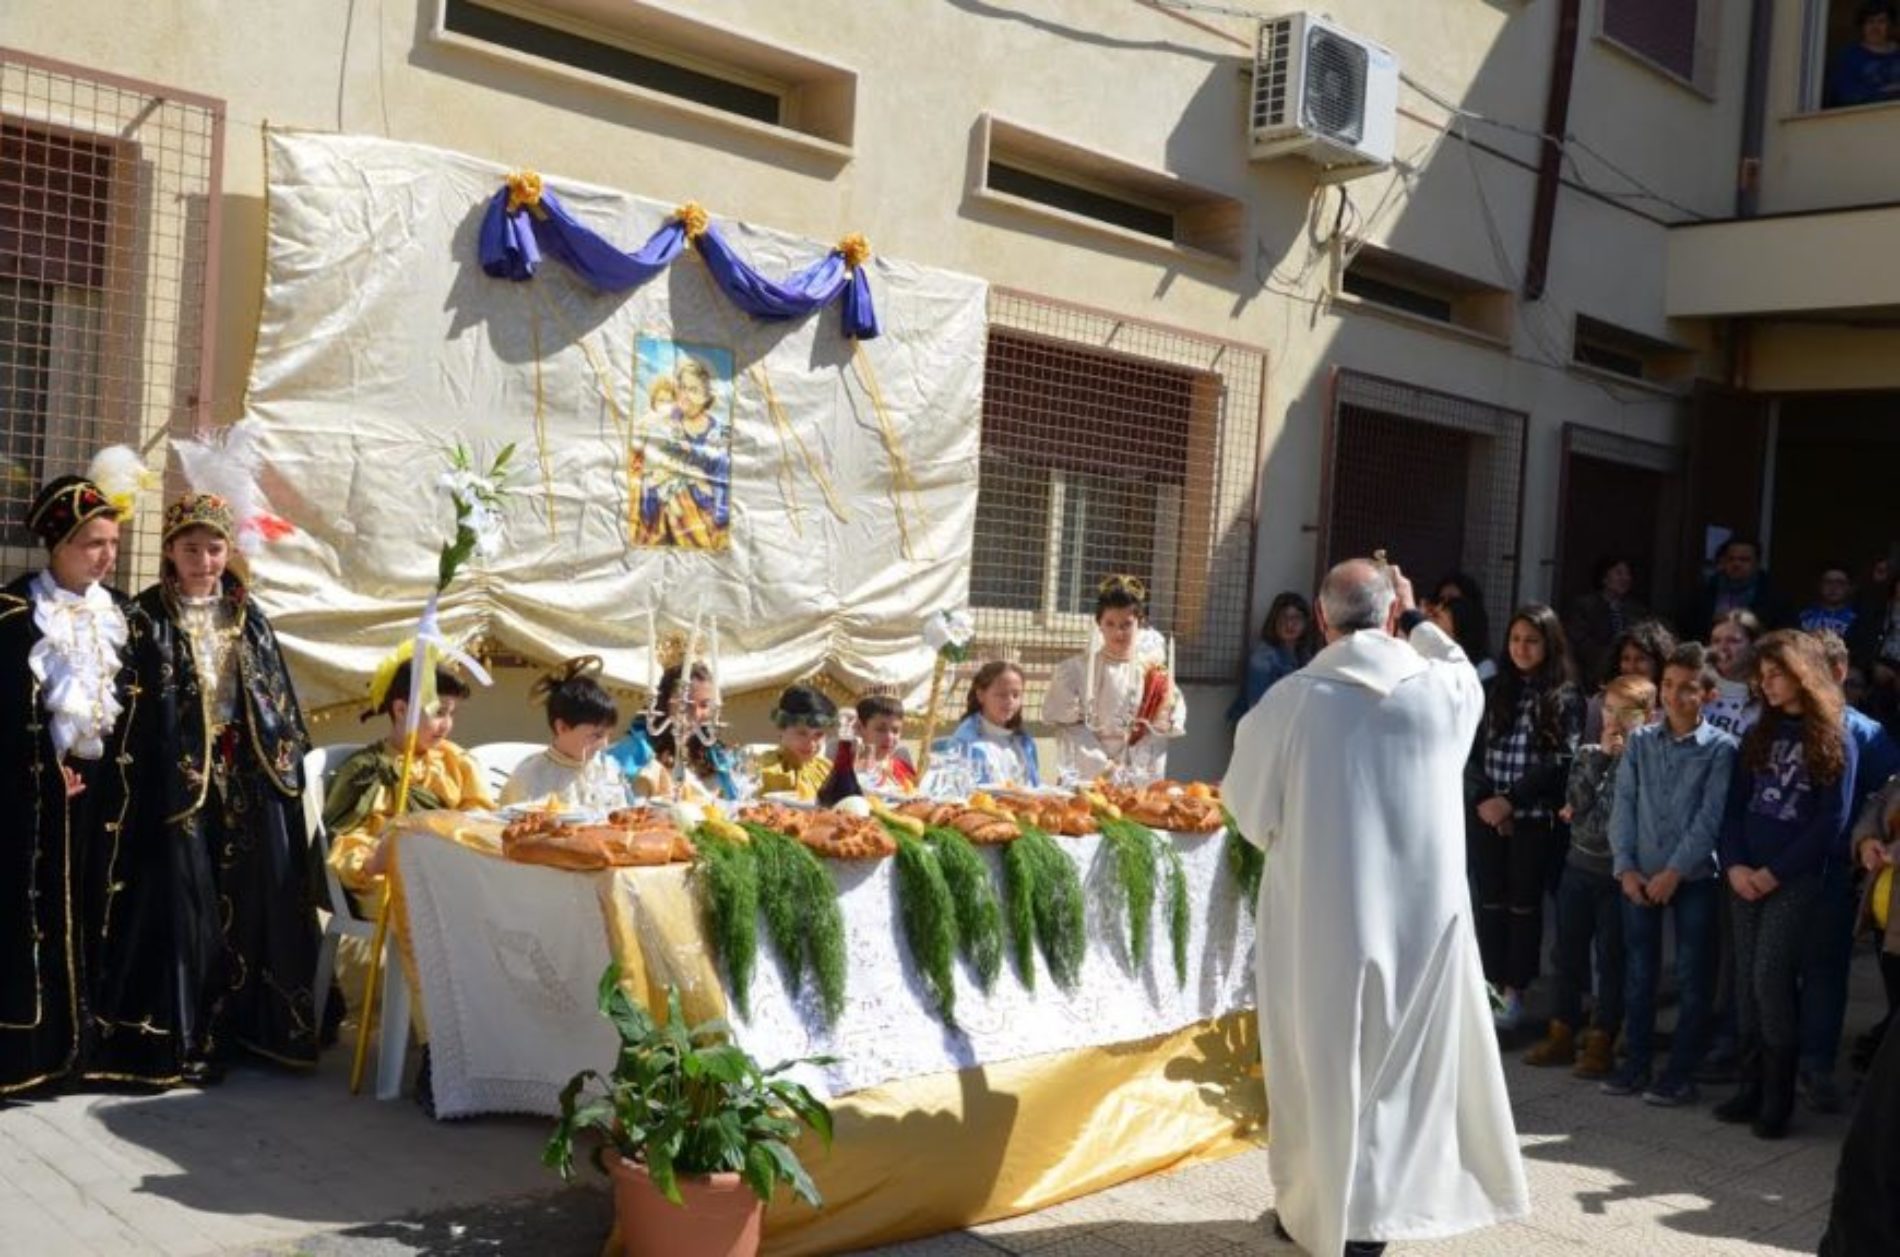 Il plesso “G. Verga” celebra la festa di san Giuseppe con la tradizionale “tavolata”